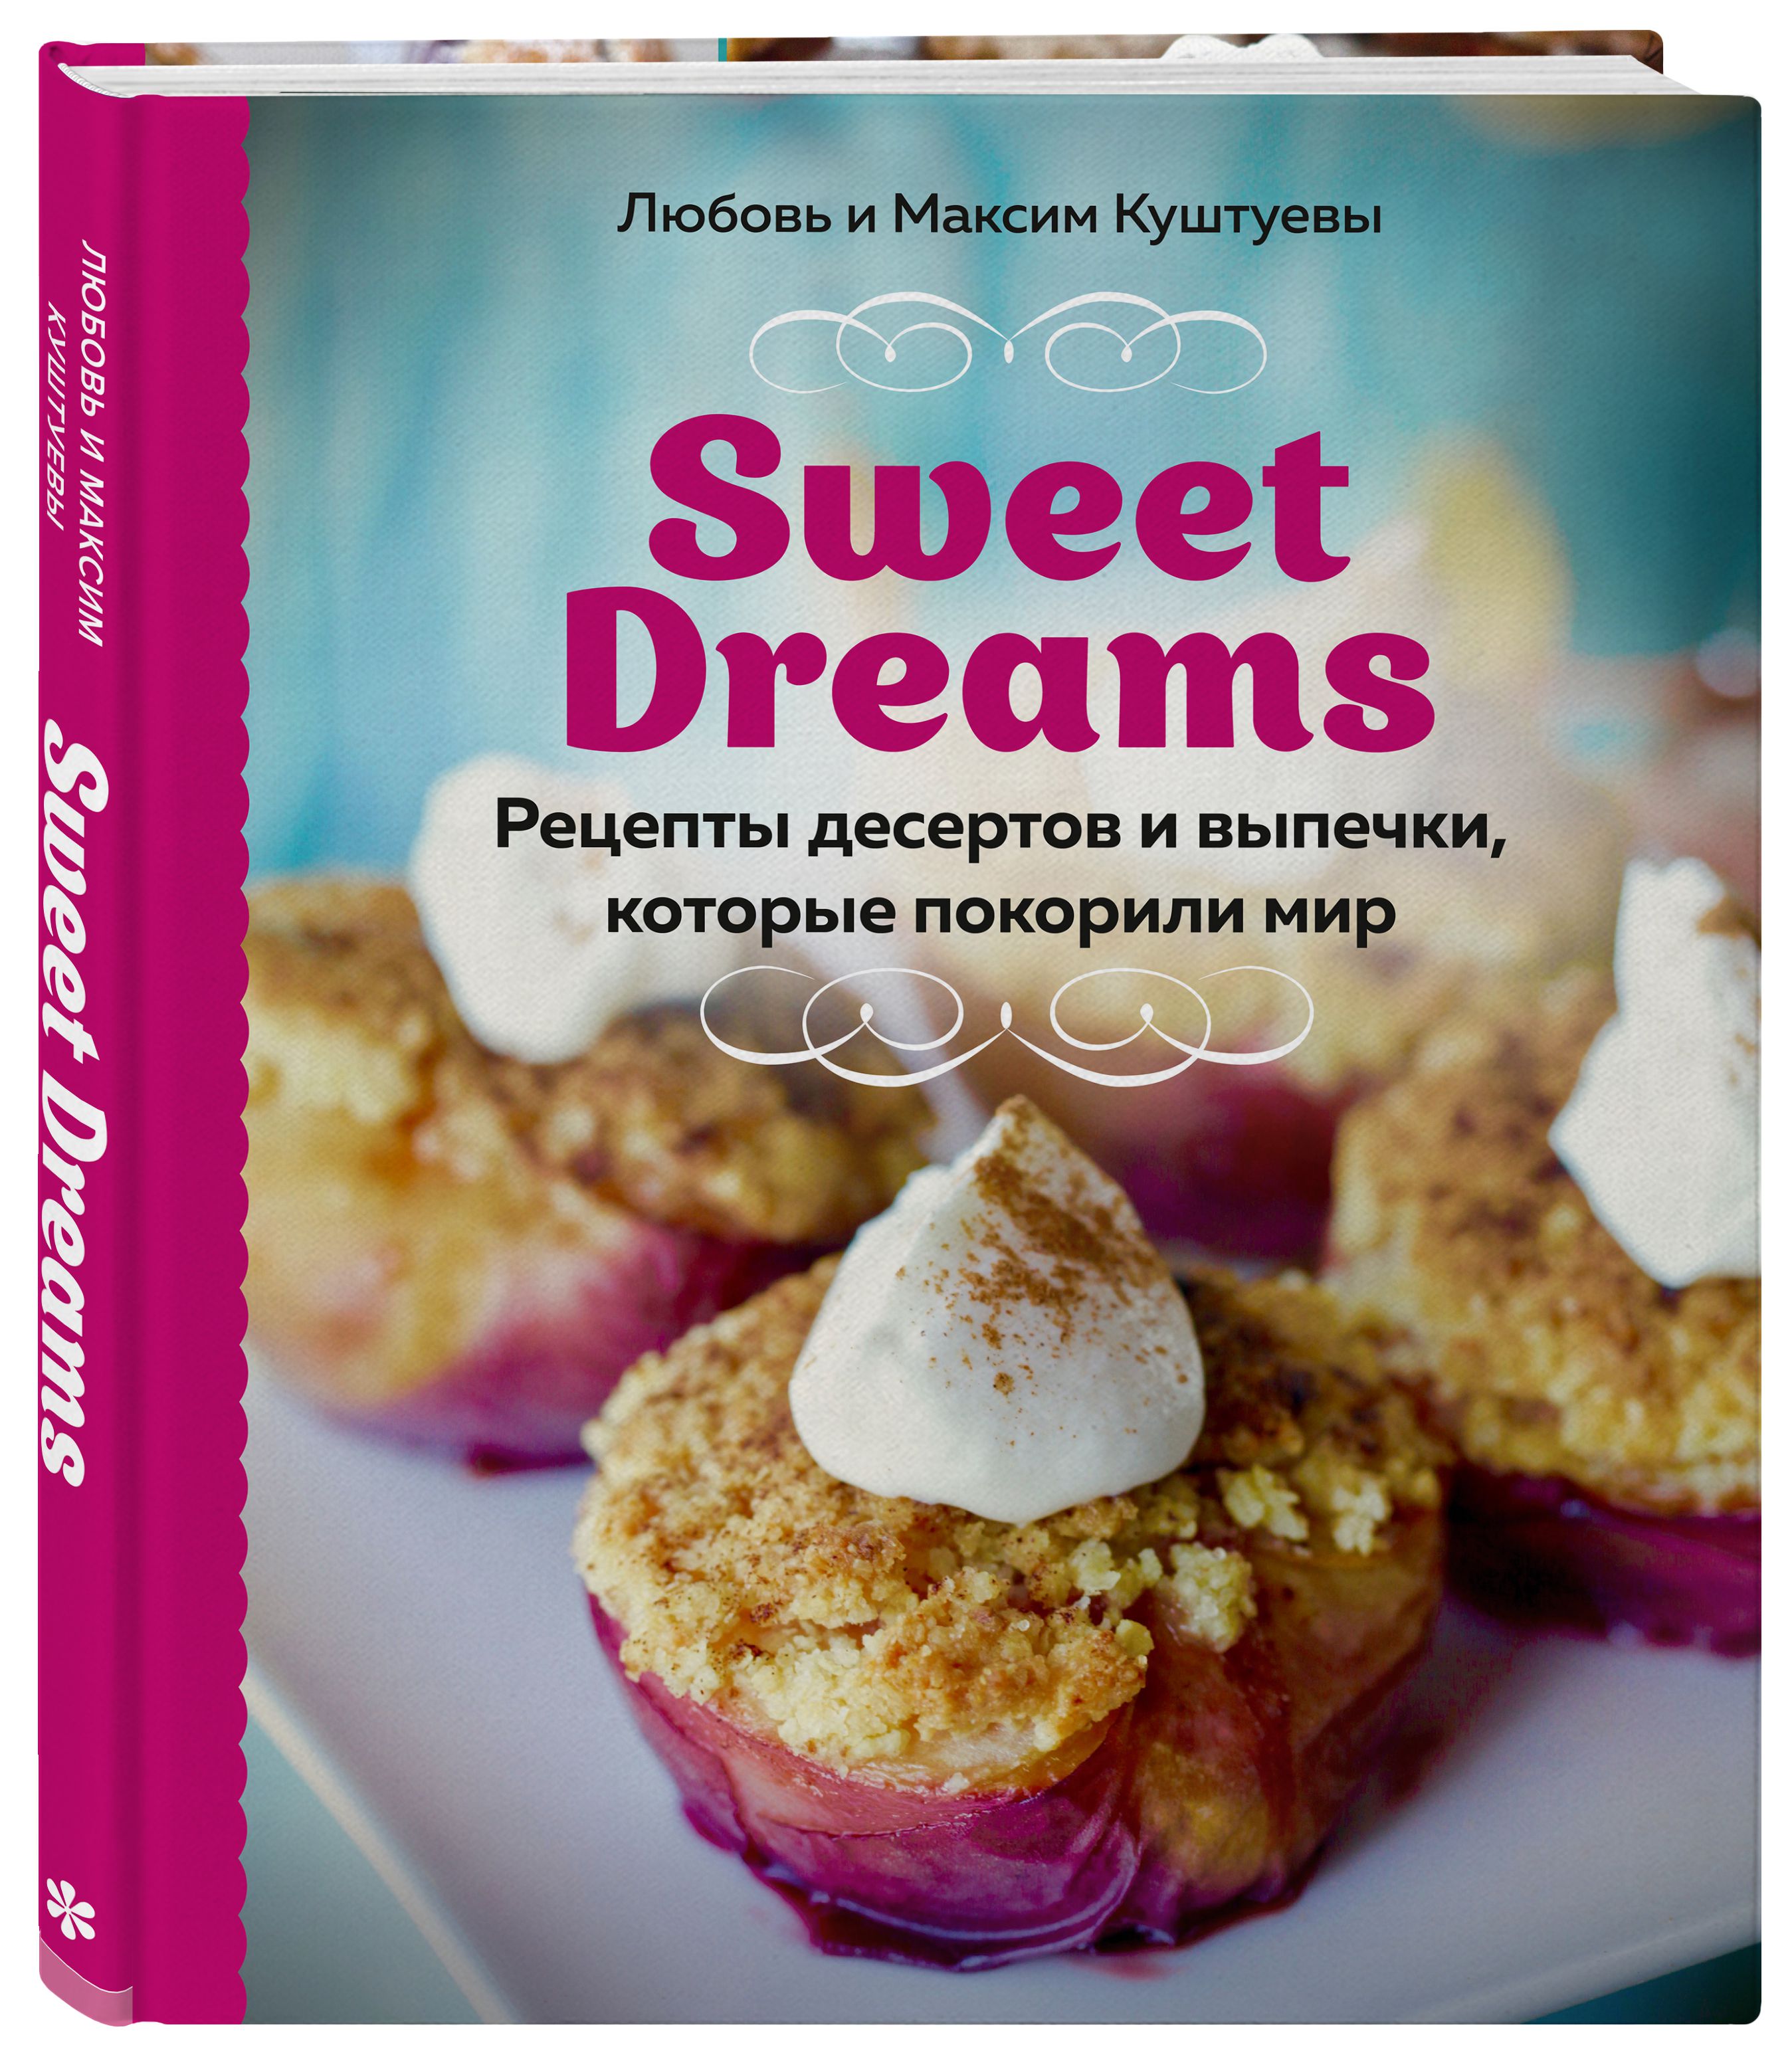 Sweet Dreams: Рецепты десертов и выпечки, которые покорили мир